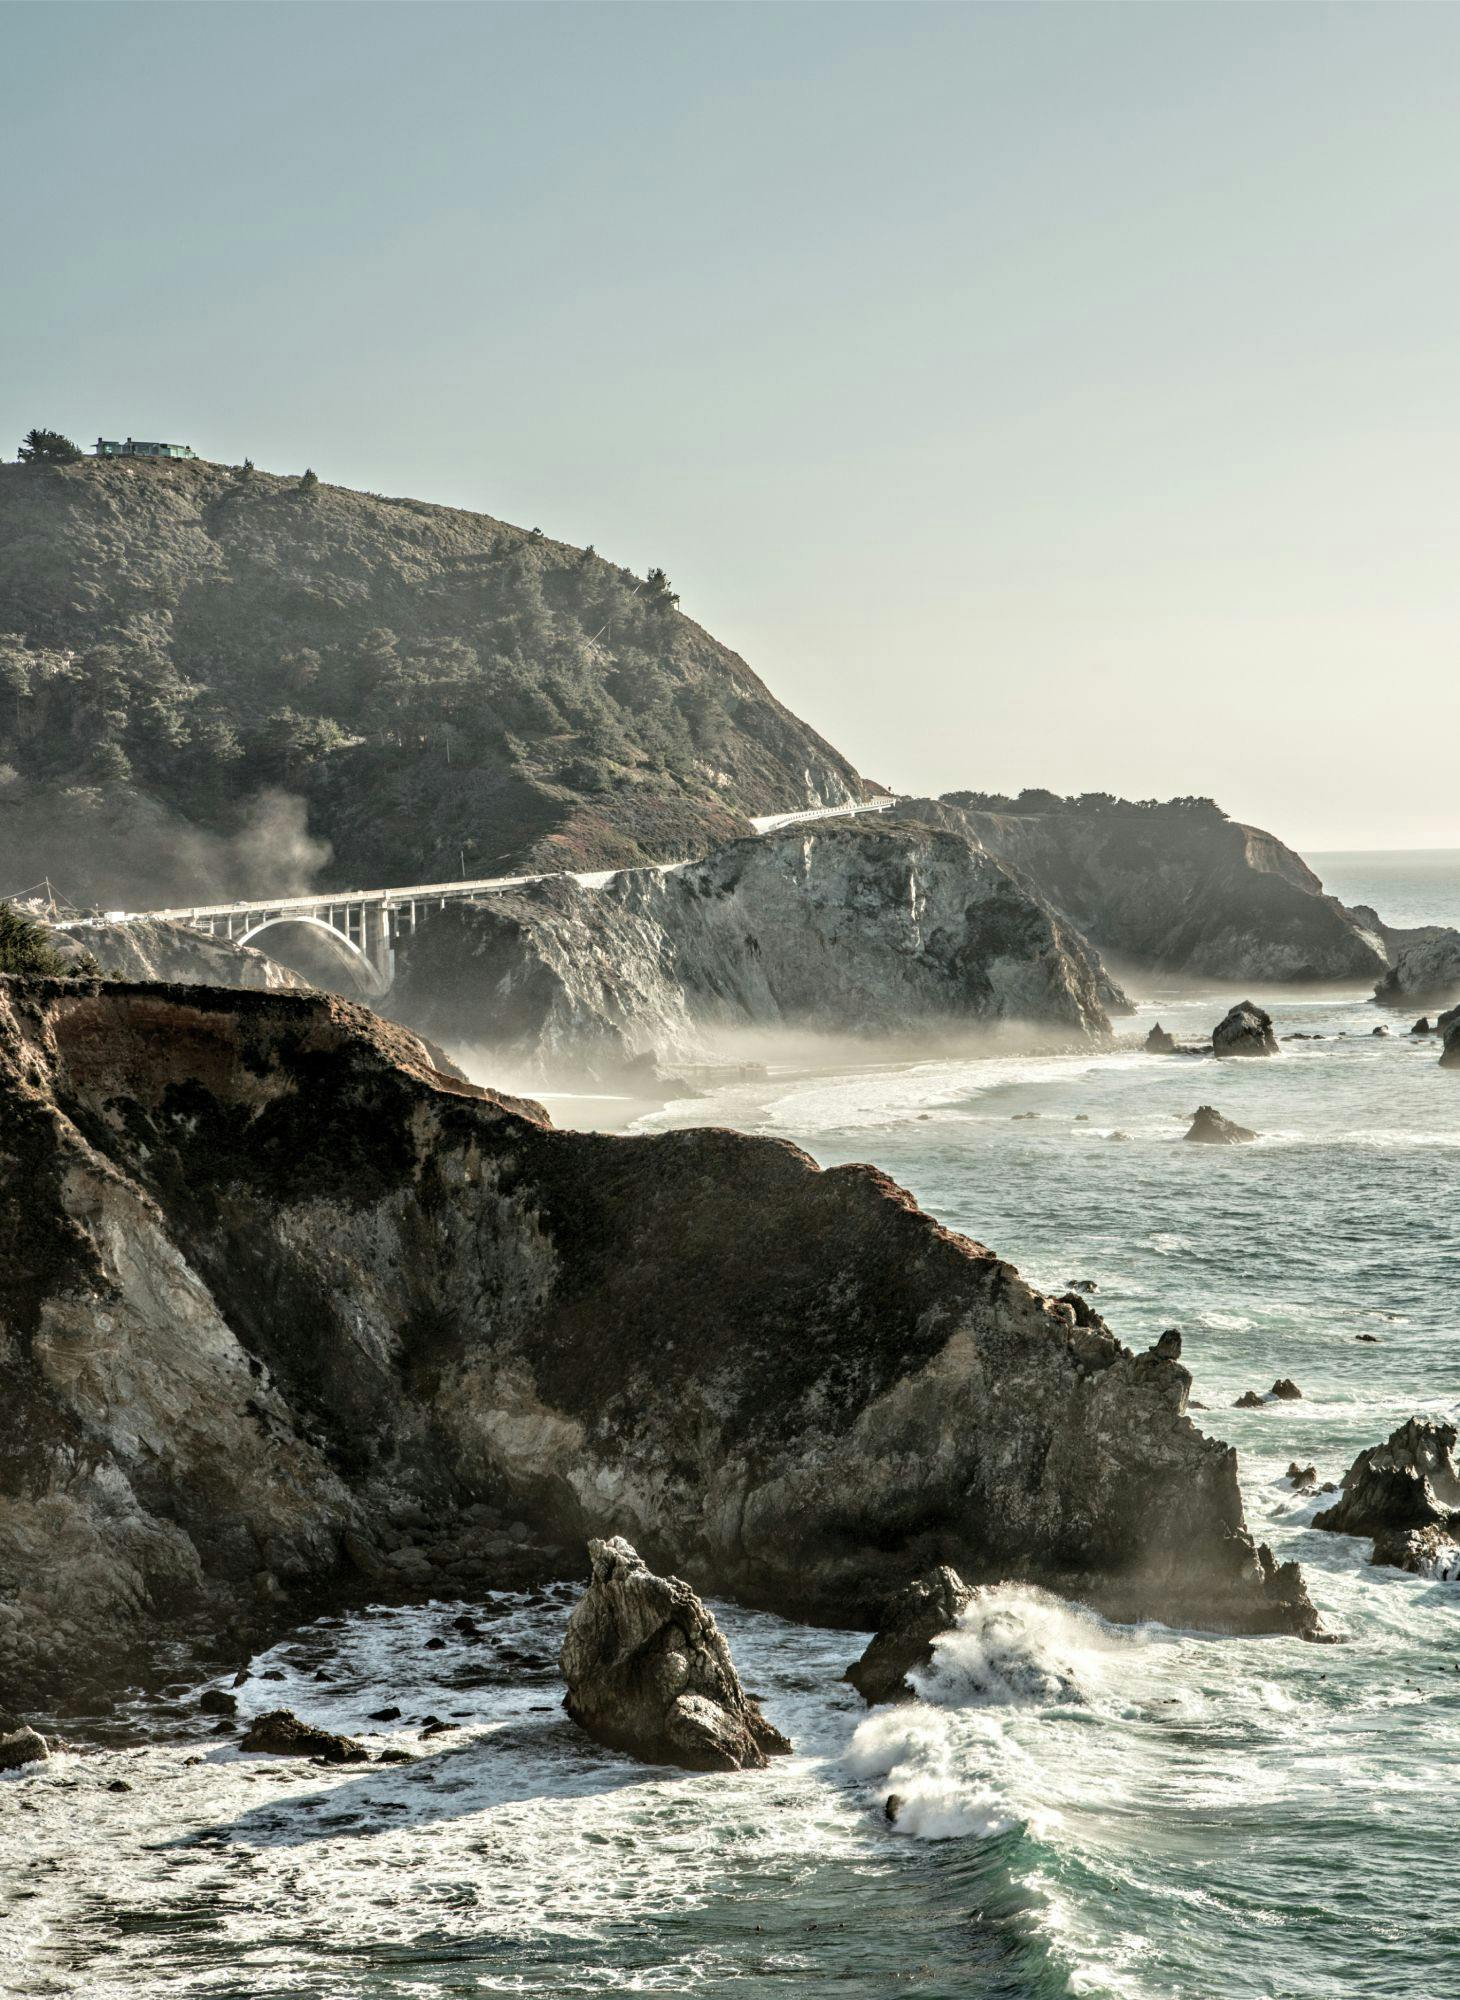 A rocky beach near an oceanside cliff